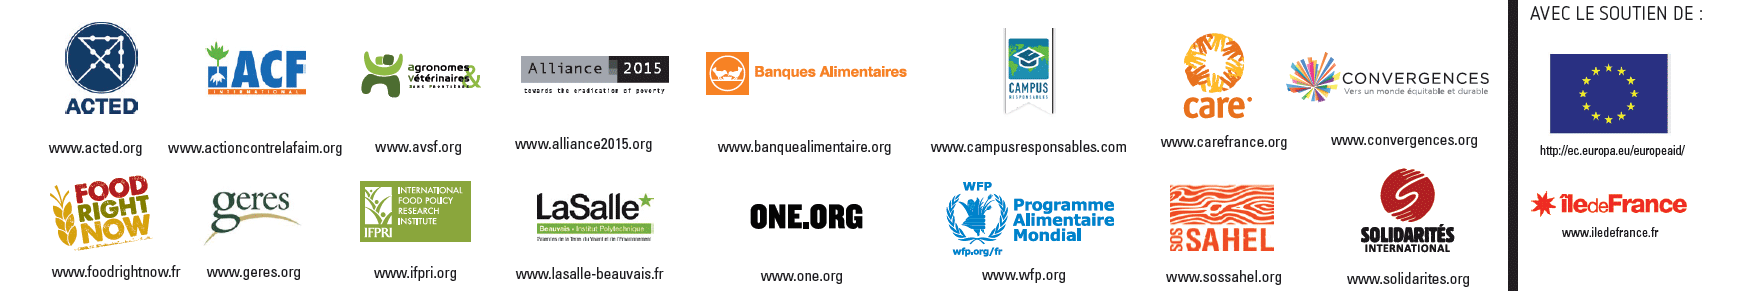 Logos ONG Baromtre2014